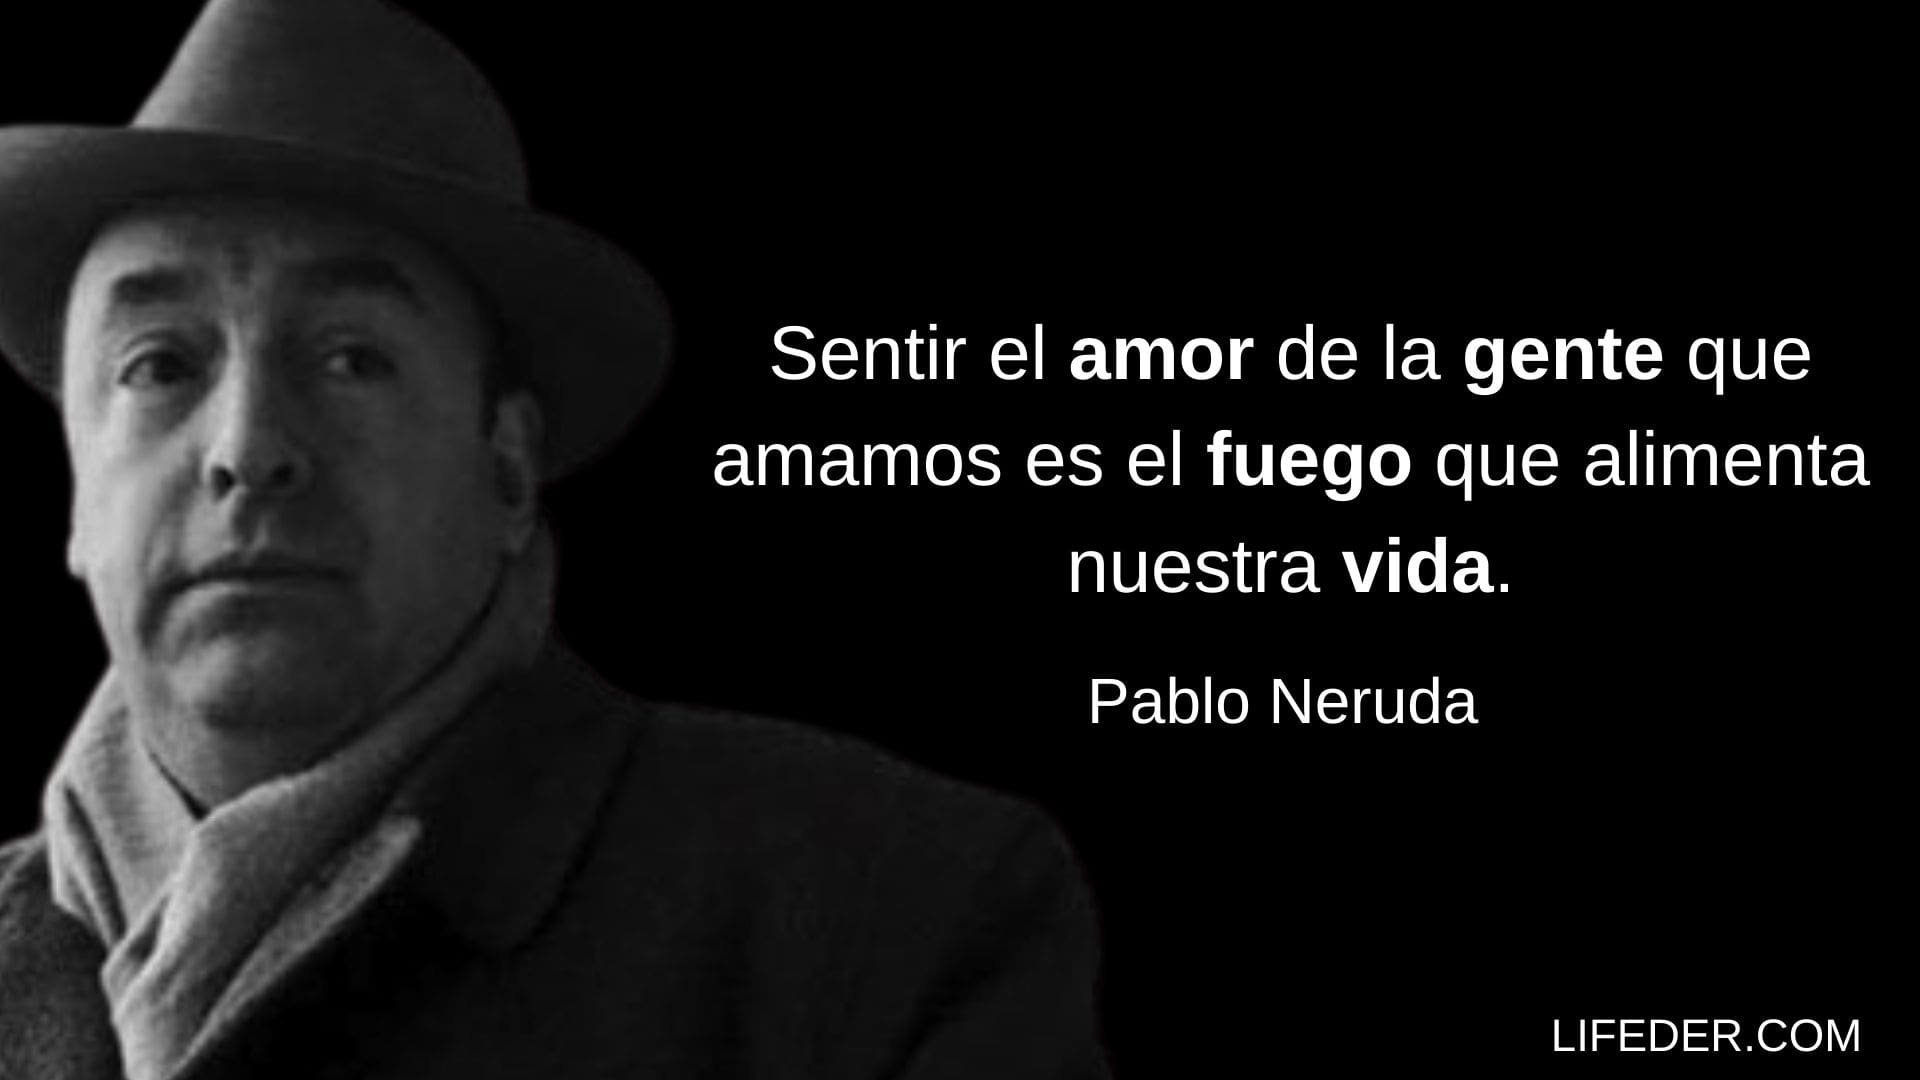 Frases De Pablo Neruda Sobre El Amor Y La Vida Hot Sex Picture